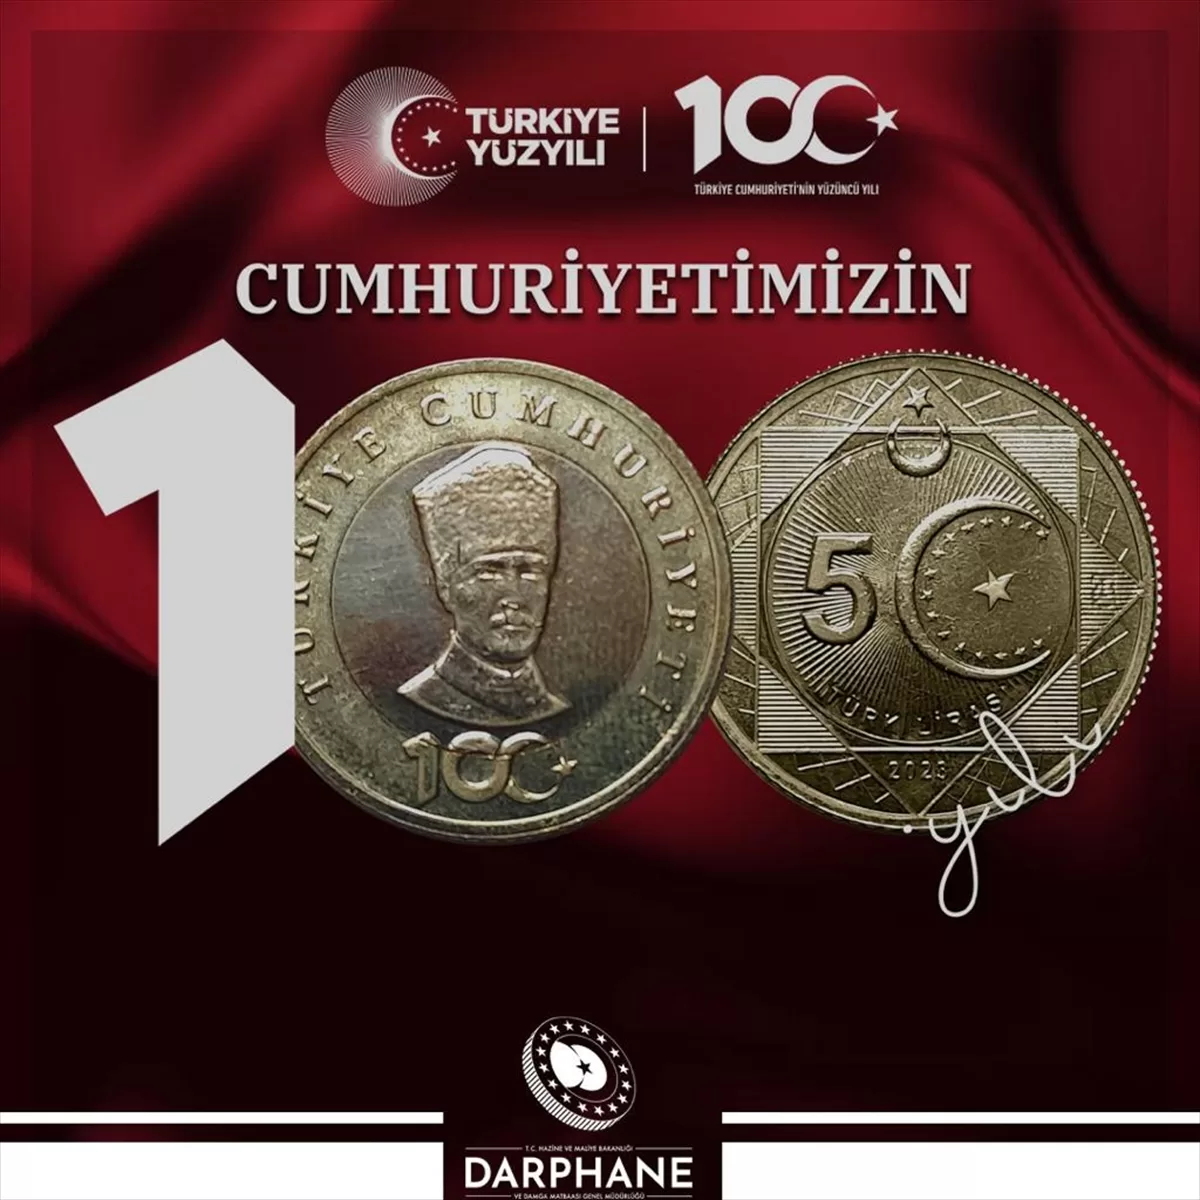 Hazine ve Maliye Bakanlığı, Cumhuriyet'in 100. yılına özel basılan “5 Türk lirası” hatıra parasını tanıttı